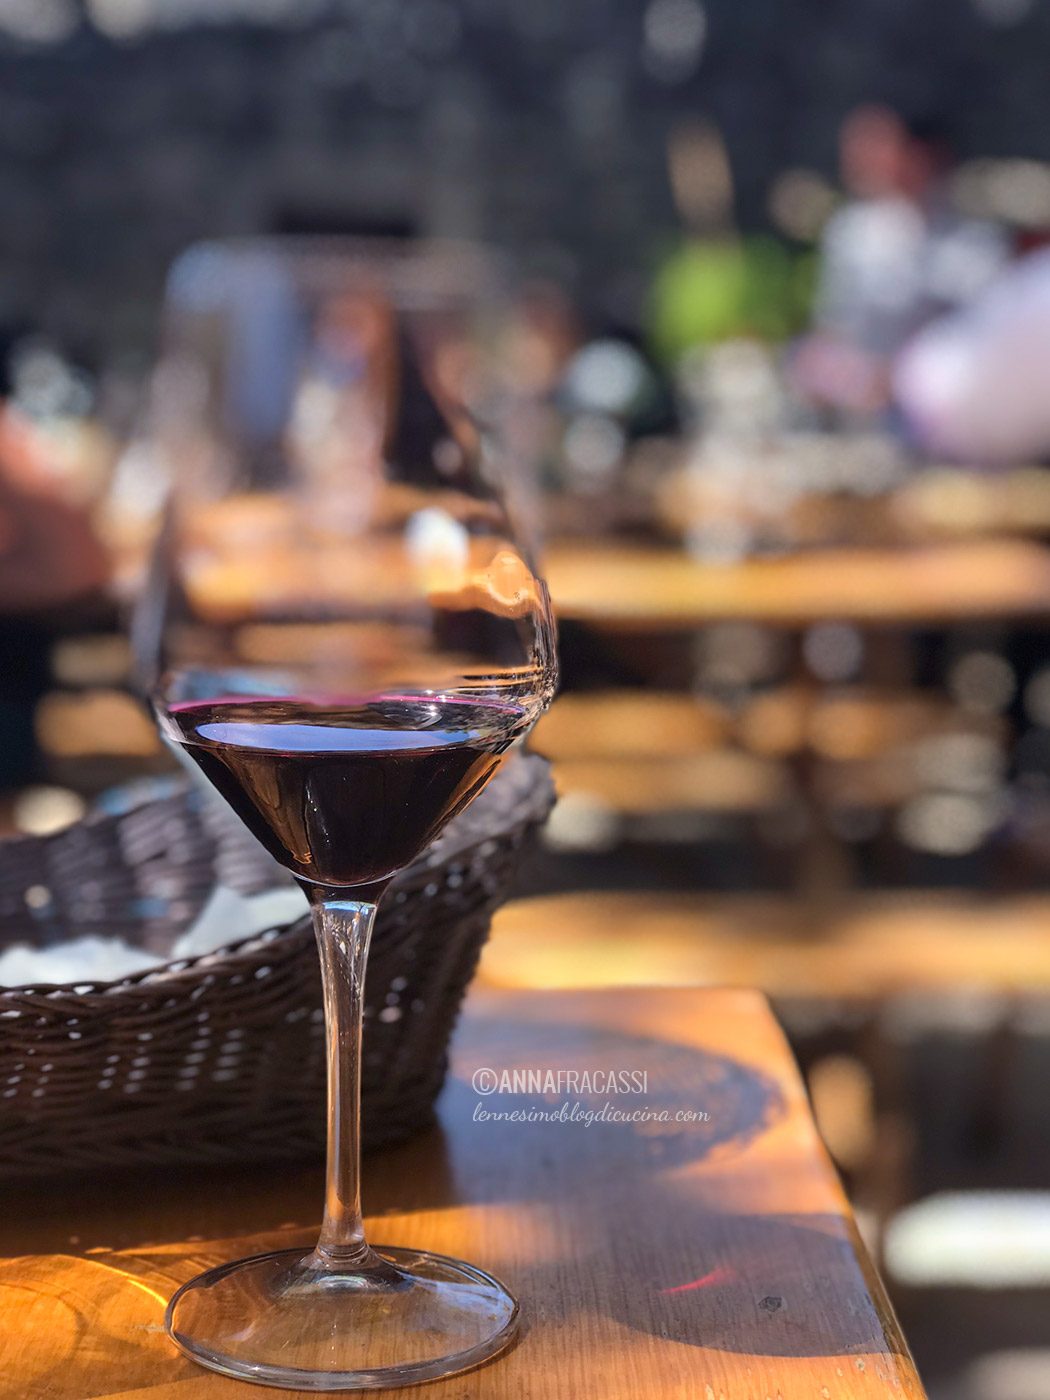 Trieste da gustare: la mia piccola guida food & wine